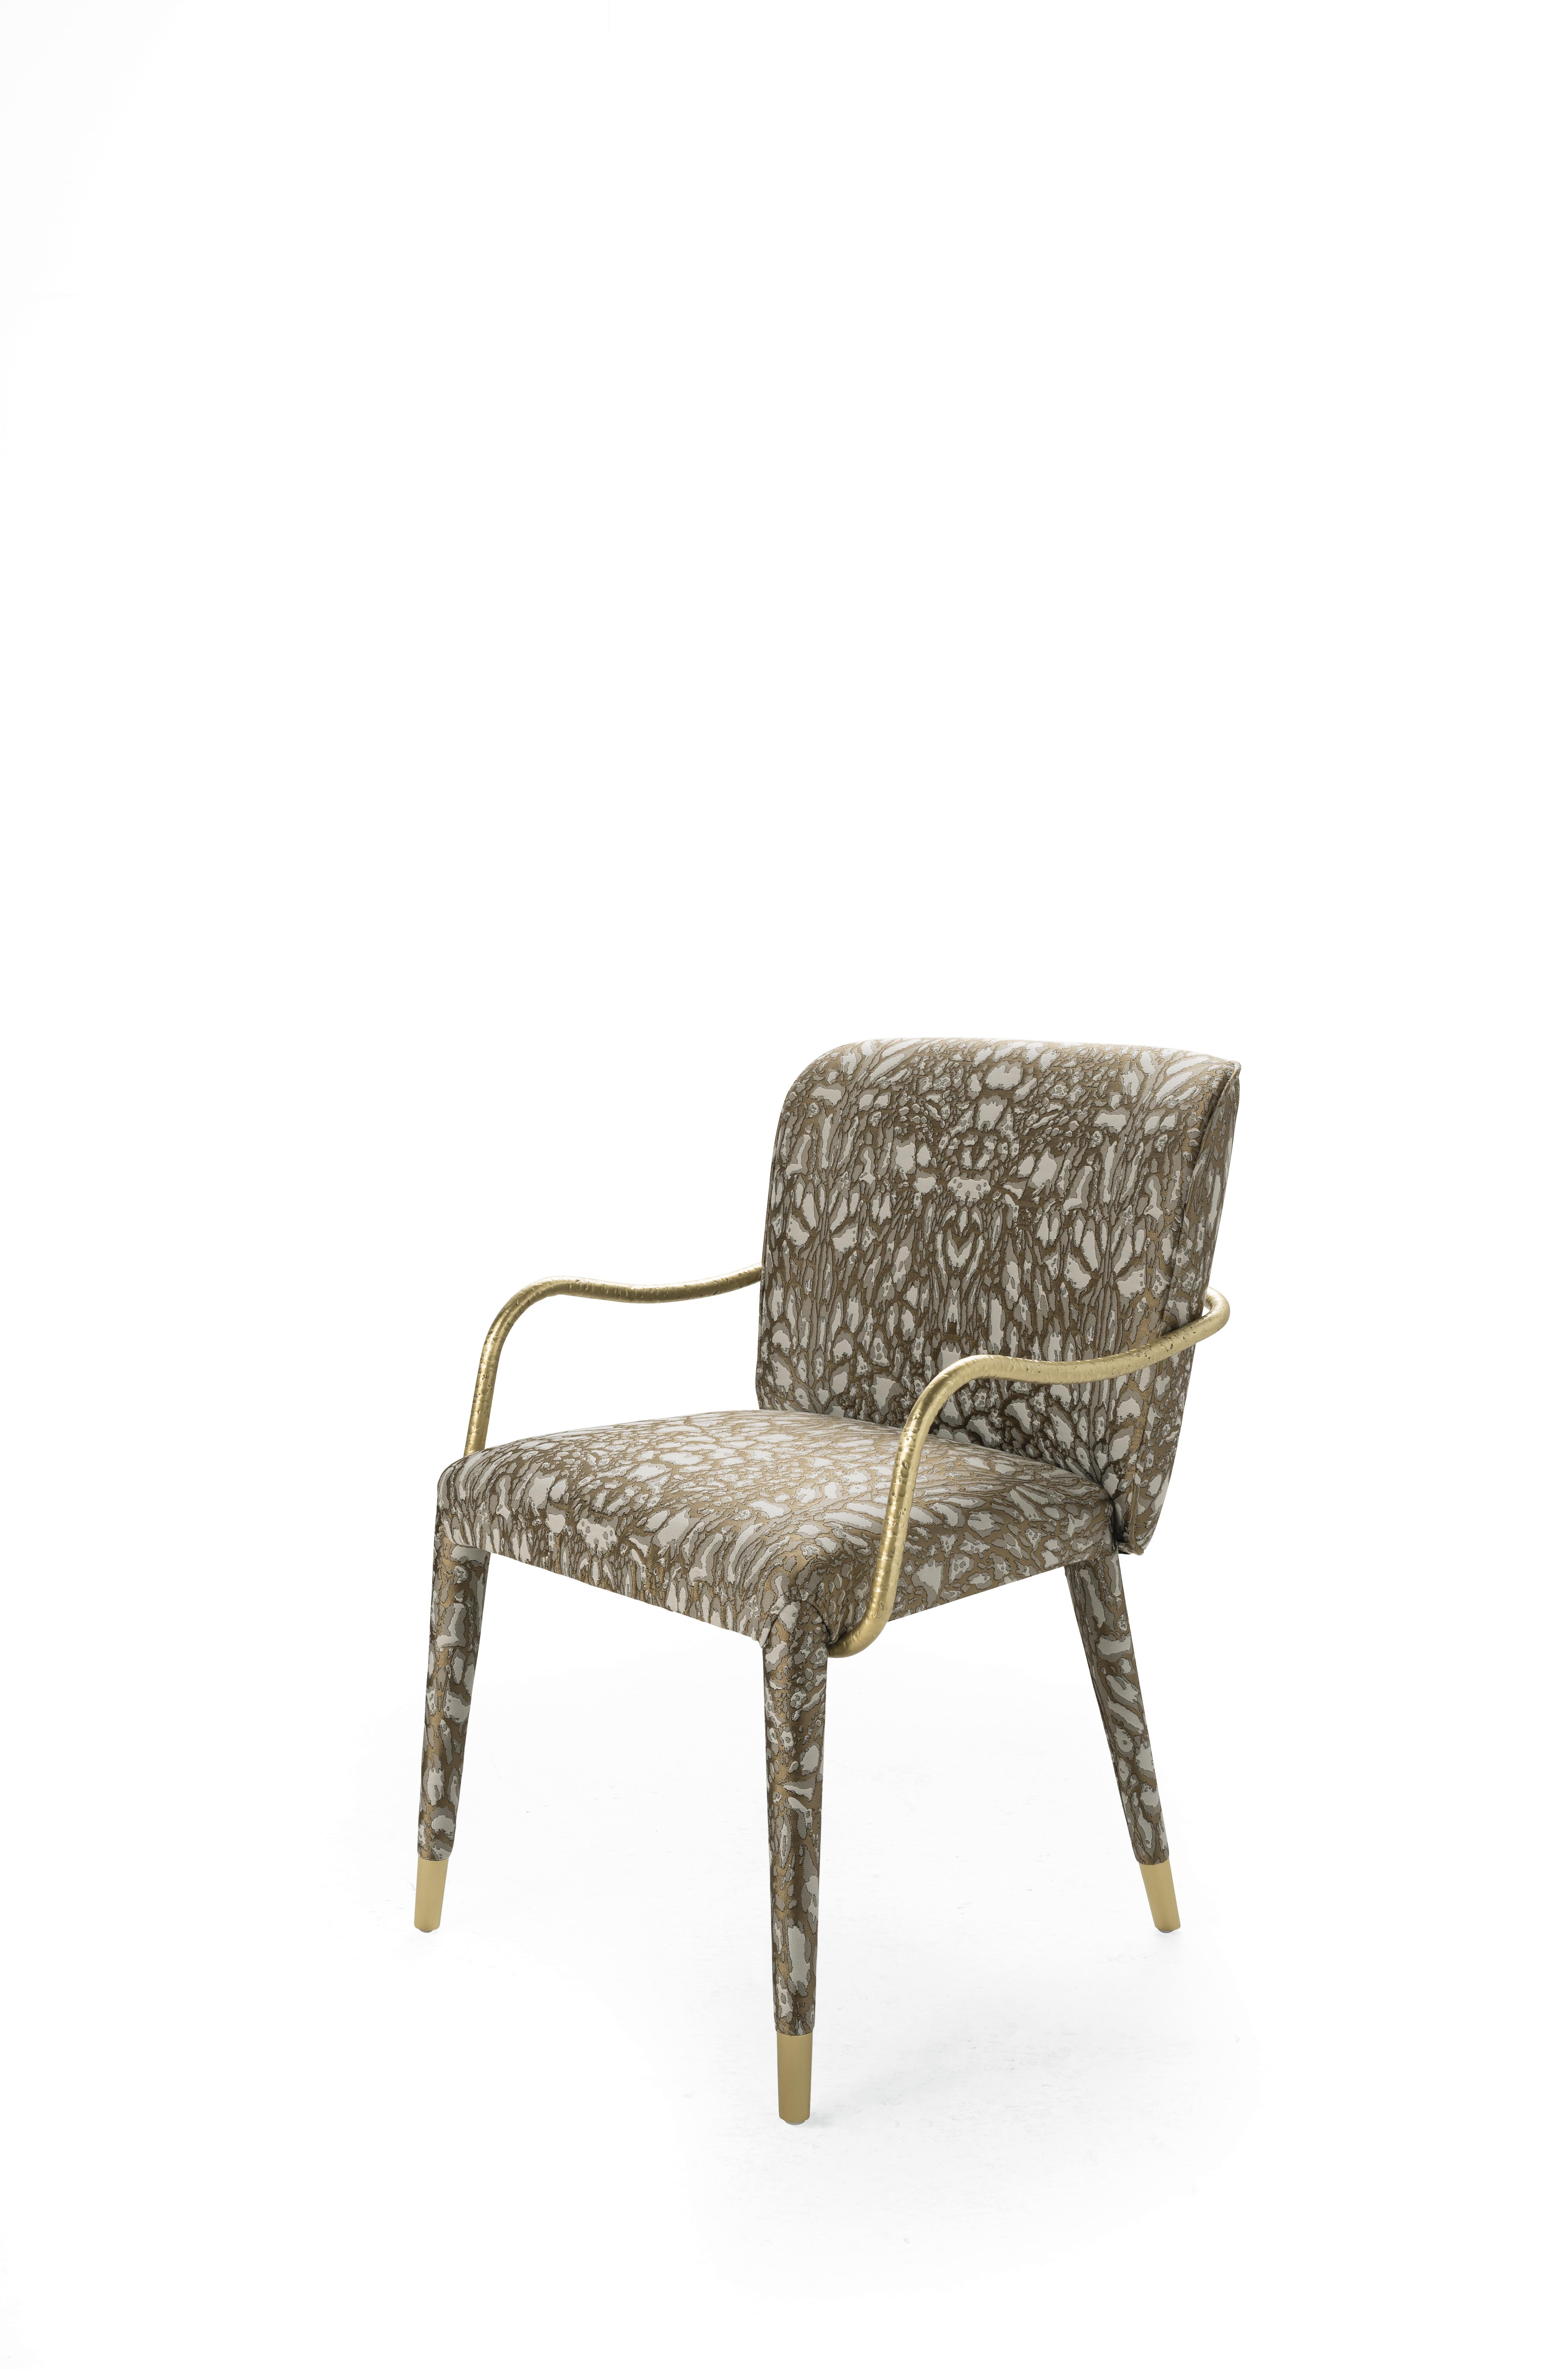 Ein schlankes und essentielles Design für den Kivu-Stuhl. Die dünne Metallarmlehne, die sich um die Struktur dreht, zeichnet sich durch eine besondere gehämmerte Oberfläche aus, die dem Ganzen einen rauen und natürlichen Effekt verleiht. Die